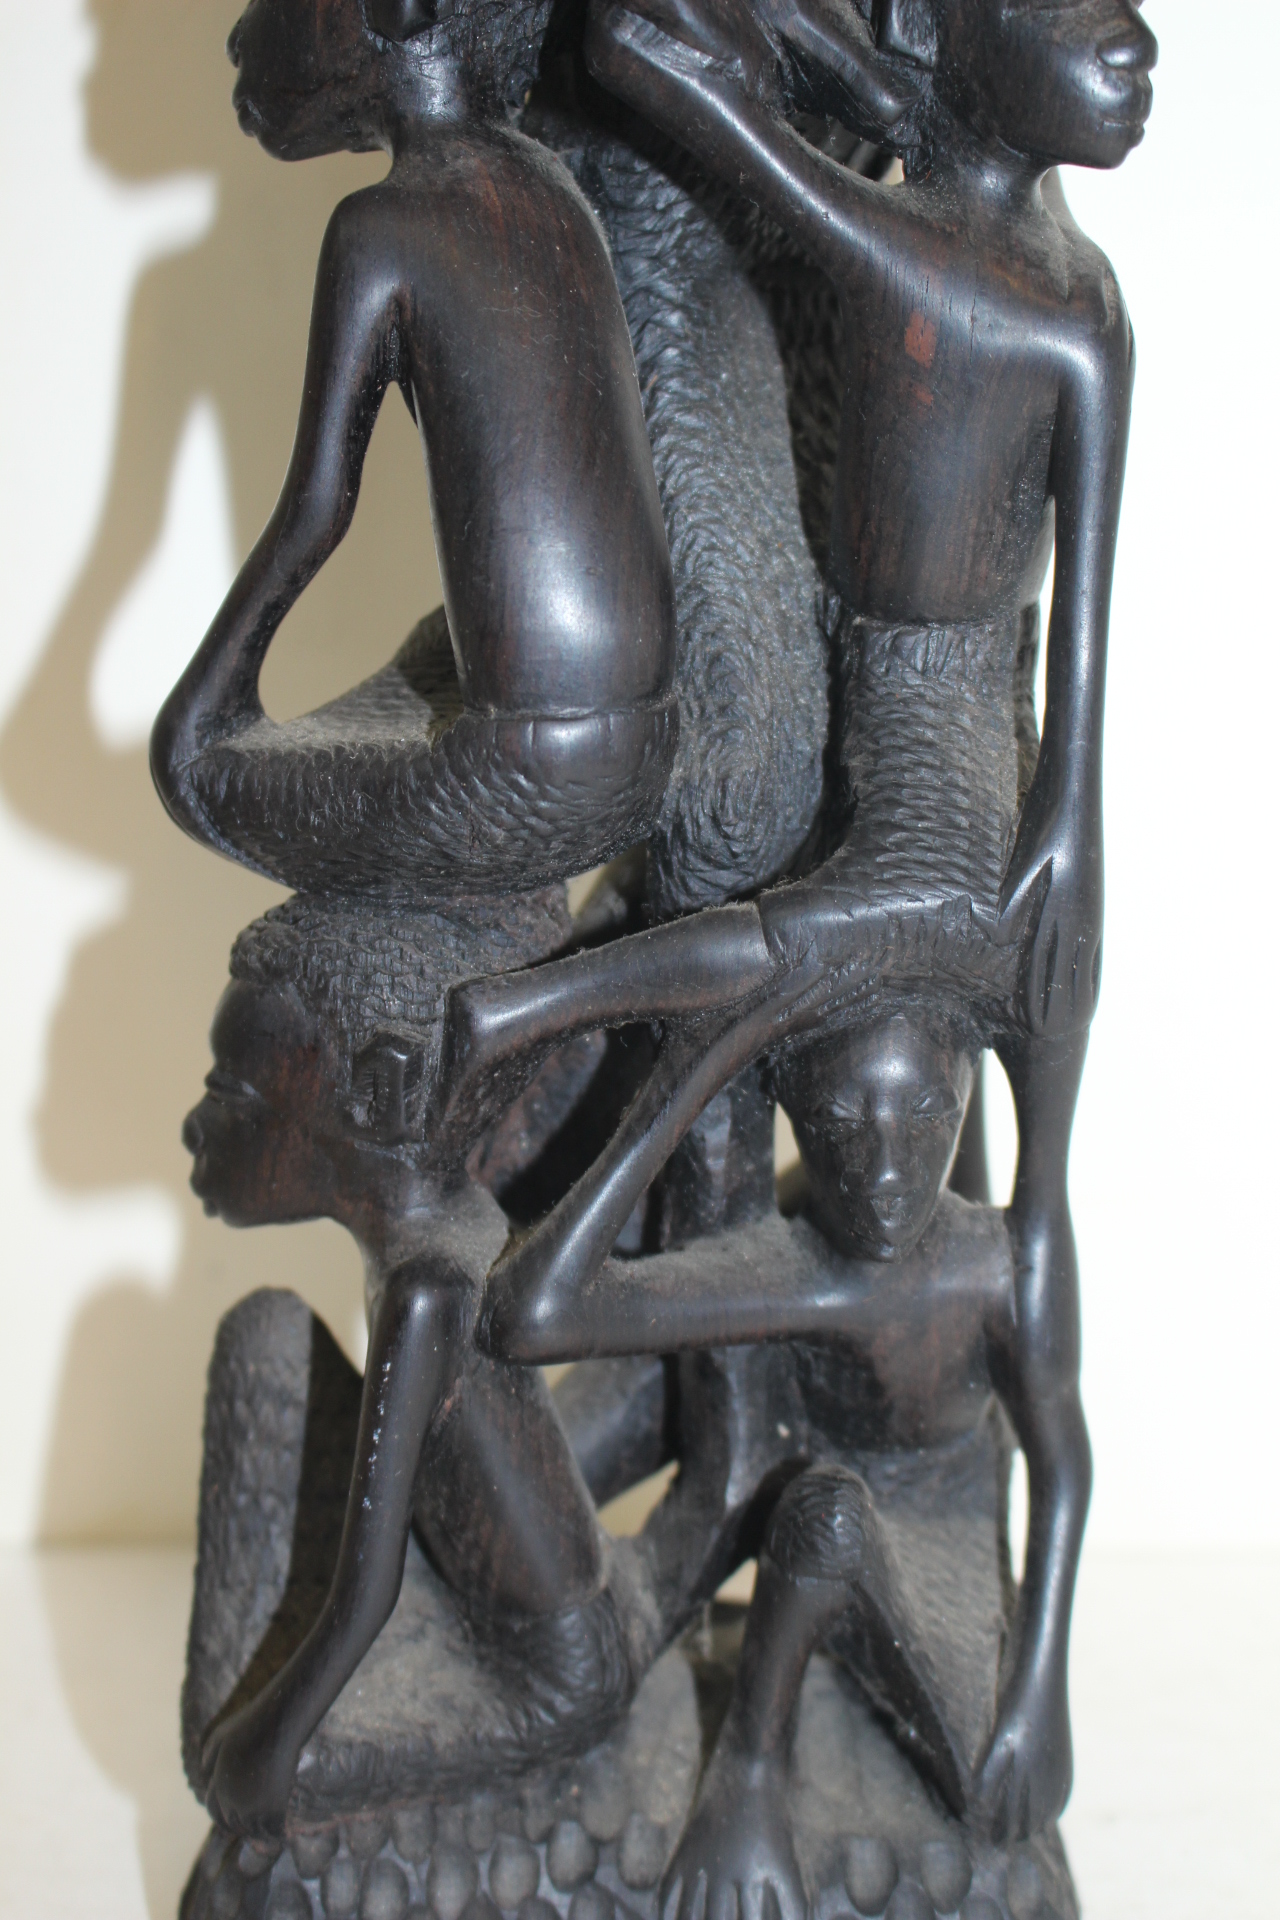 아주강한 흑단목나무로 조각된 인물 조각상